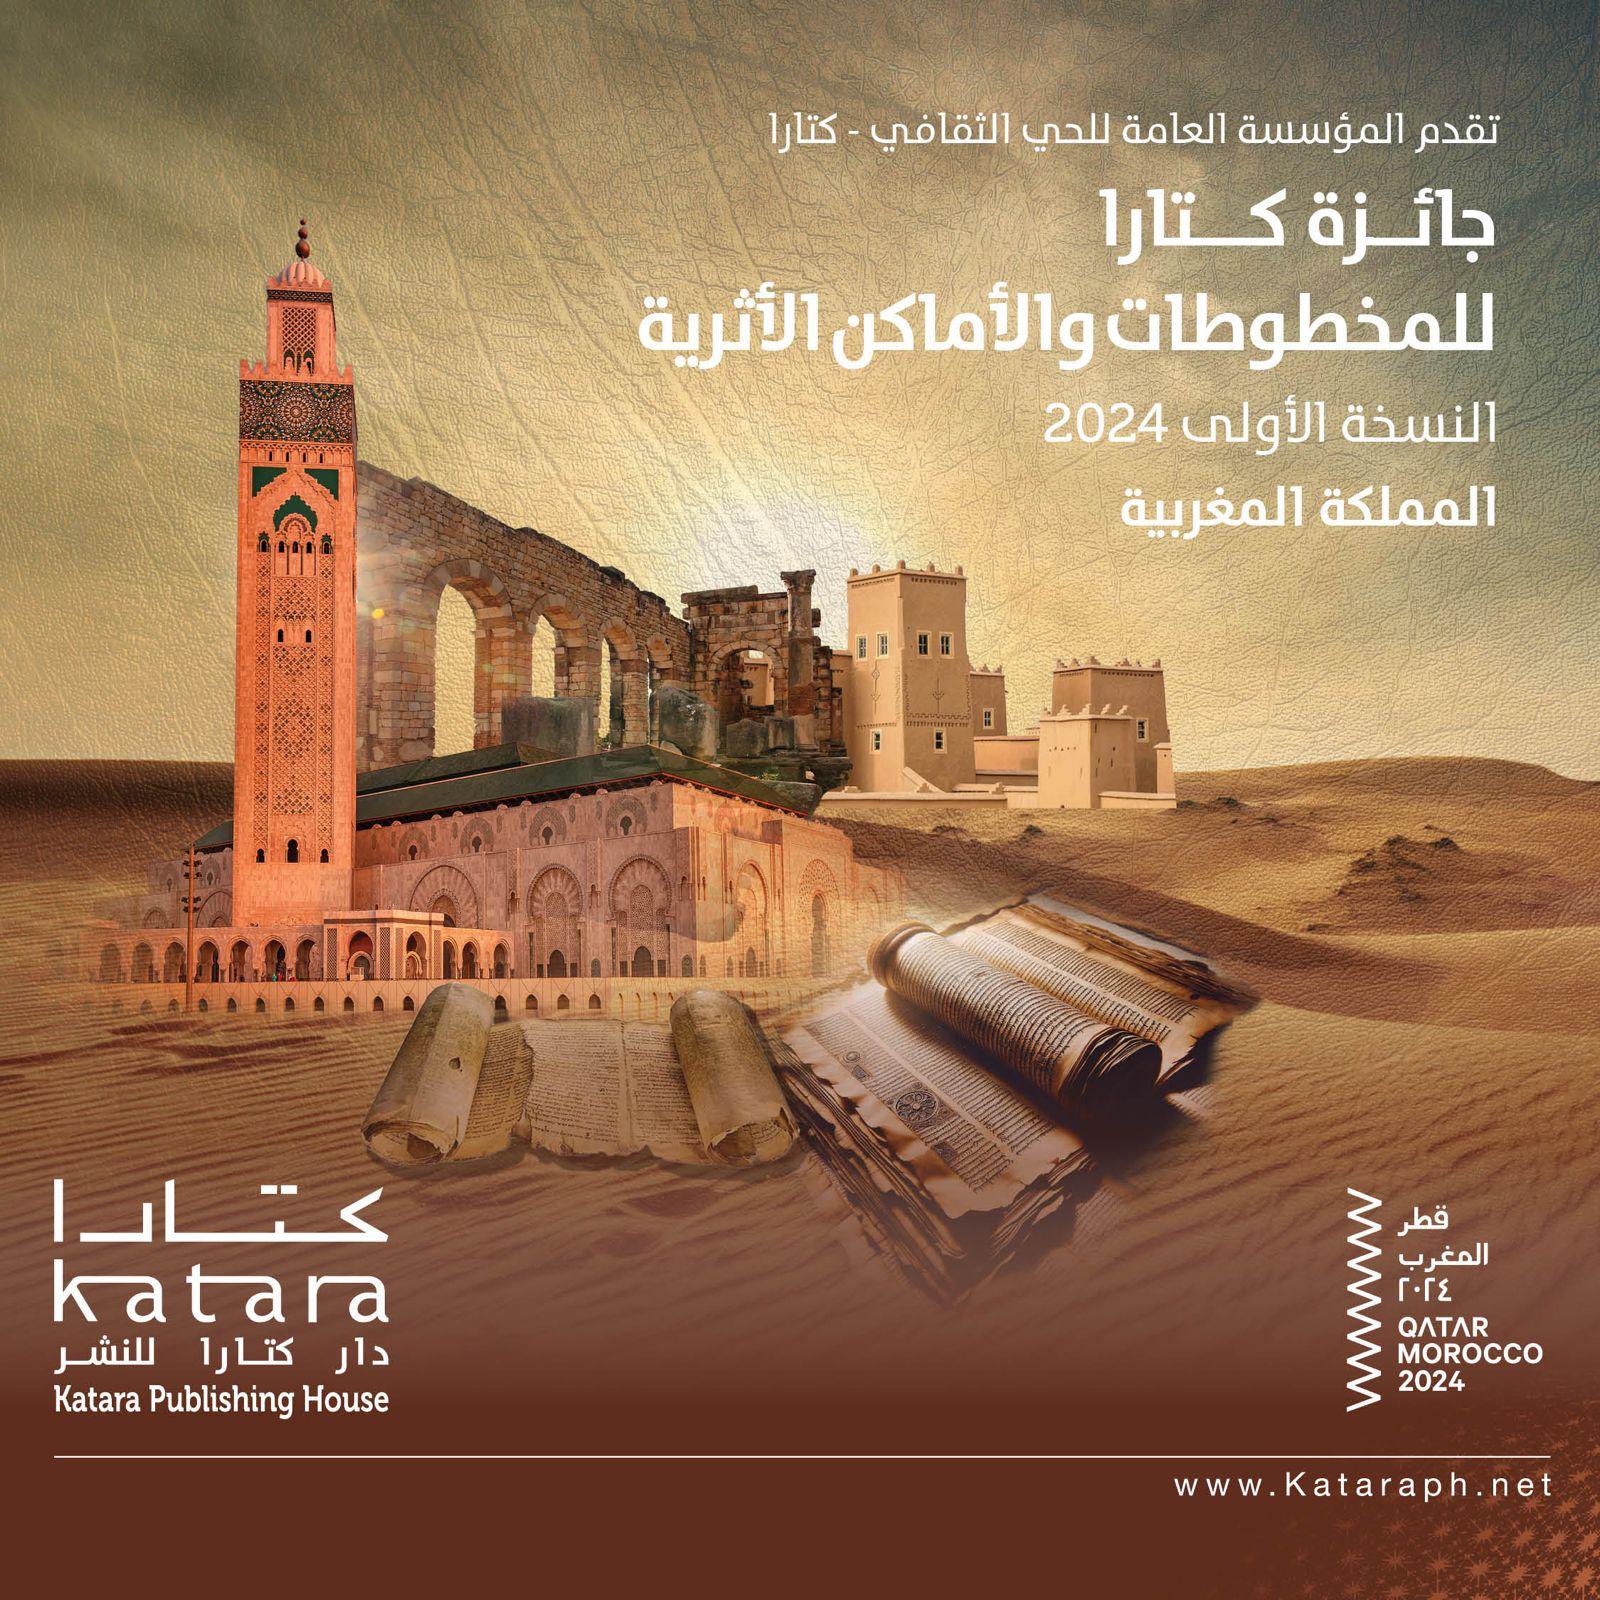 الدوحة.. إطلاق جائزة كتارا للمخطوطات والأماكن الأثرية والمغرب ضيف شرف أولى دوراتها